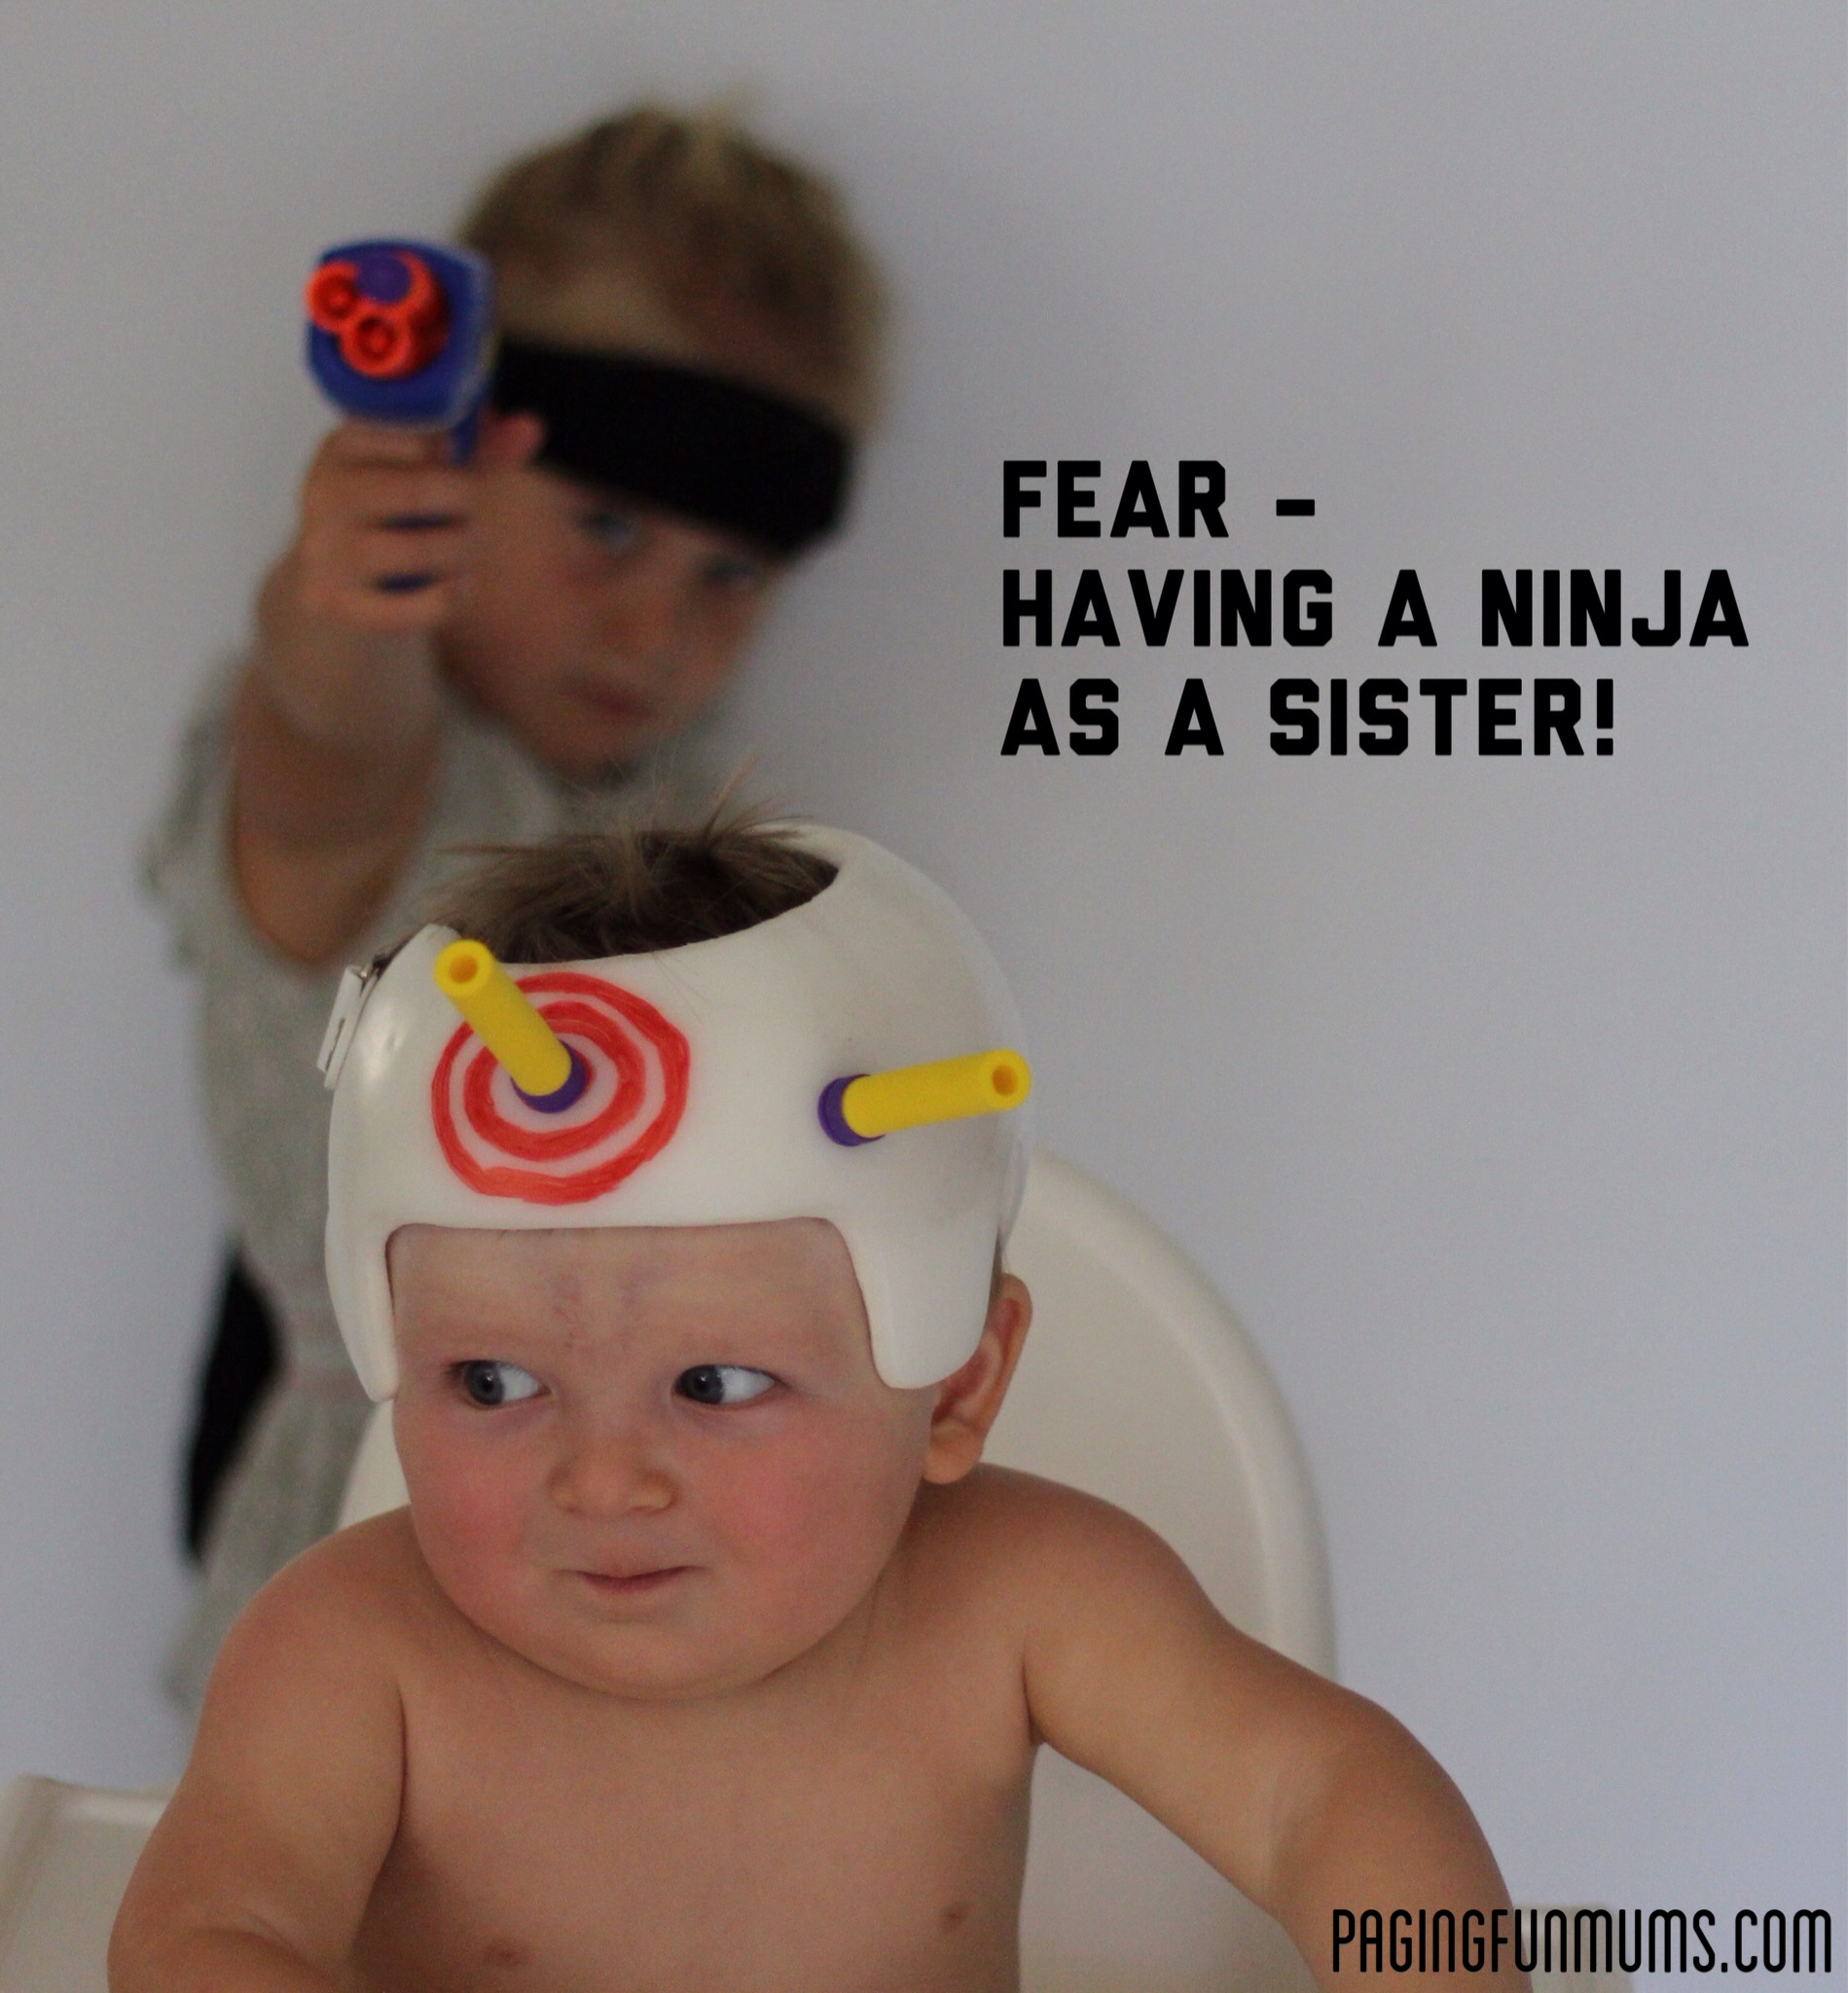 Ninja for a Sister lol!